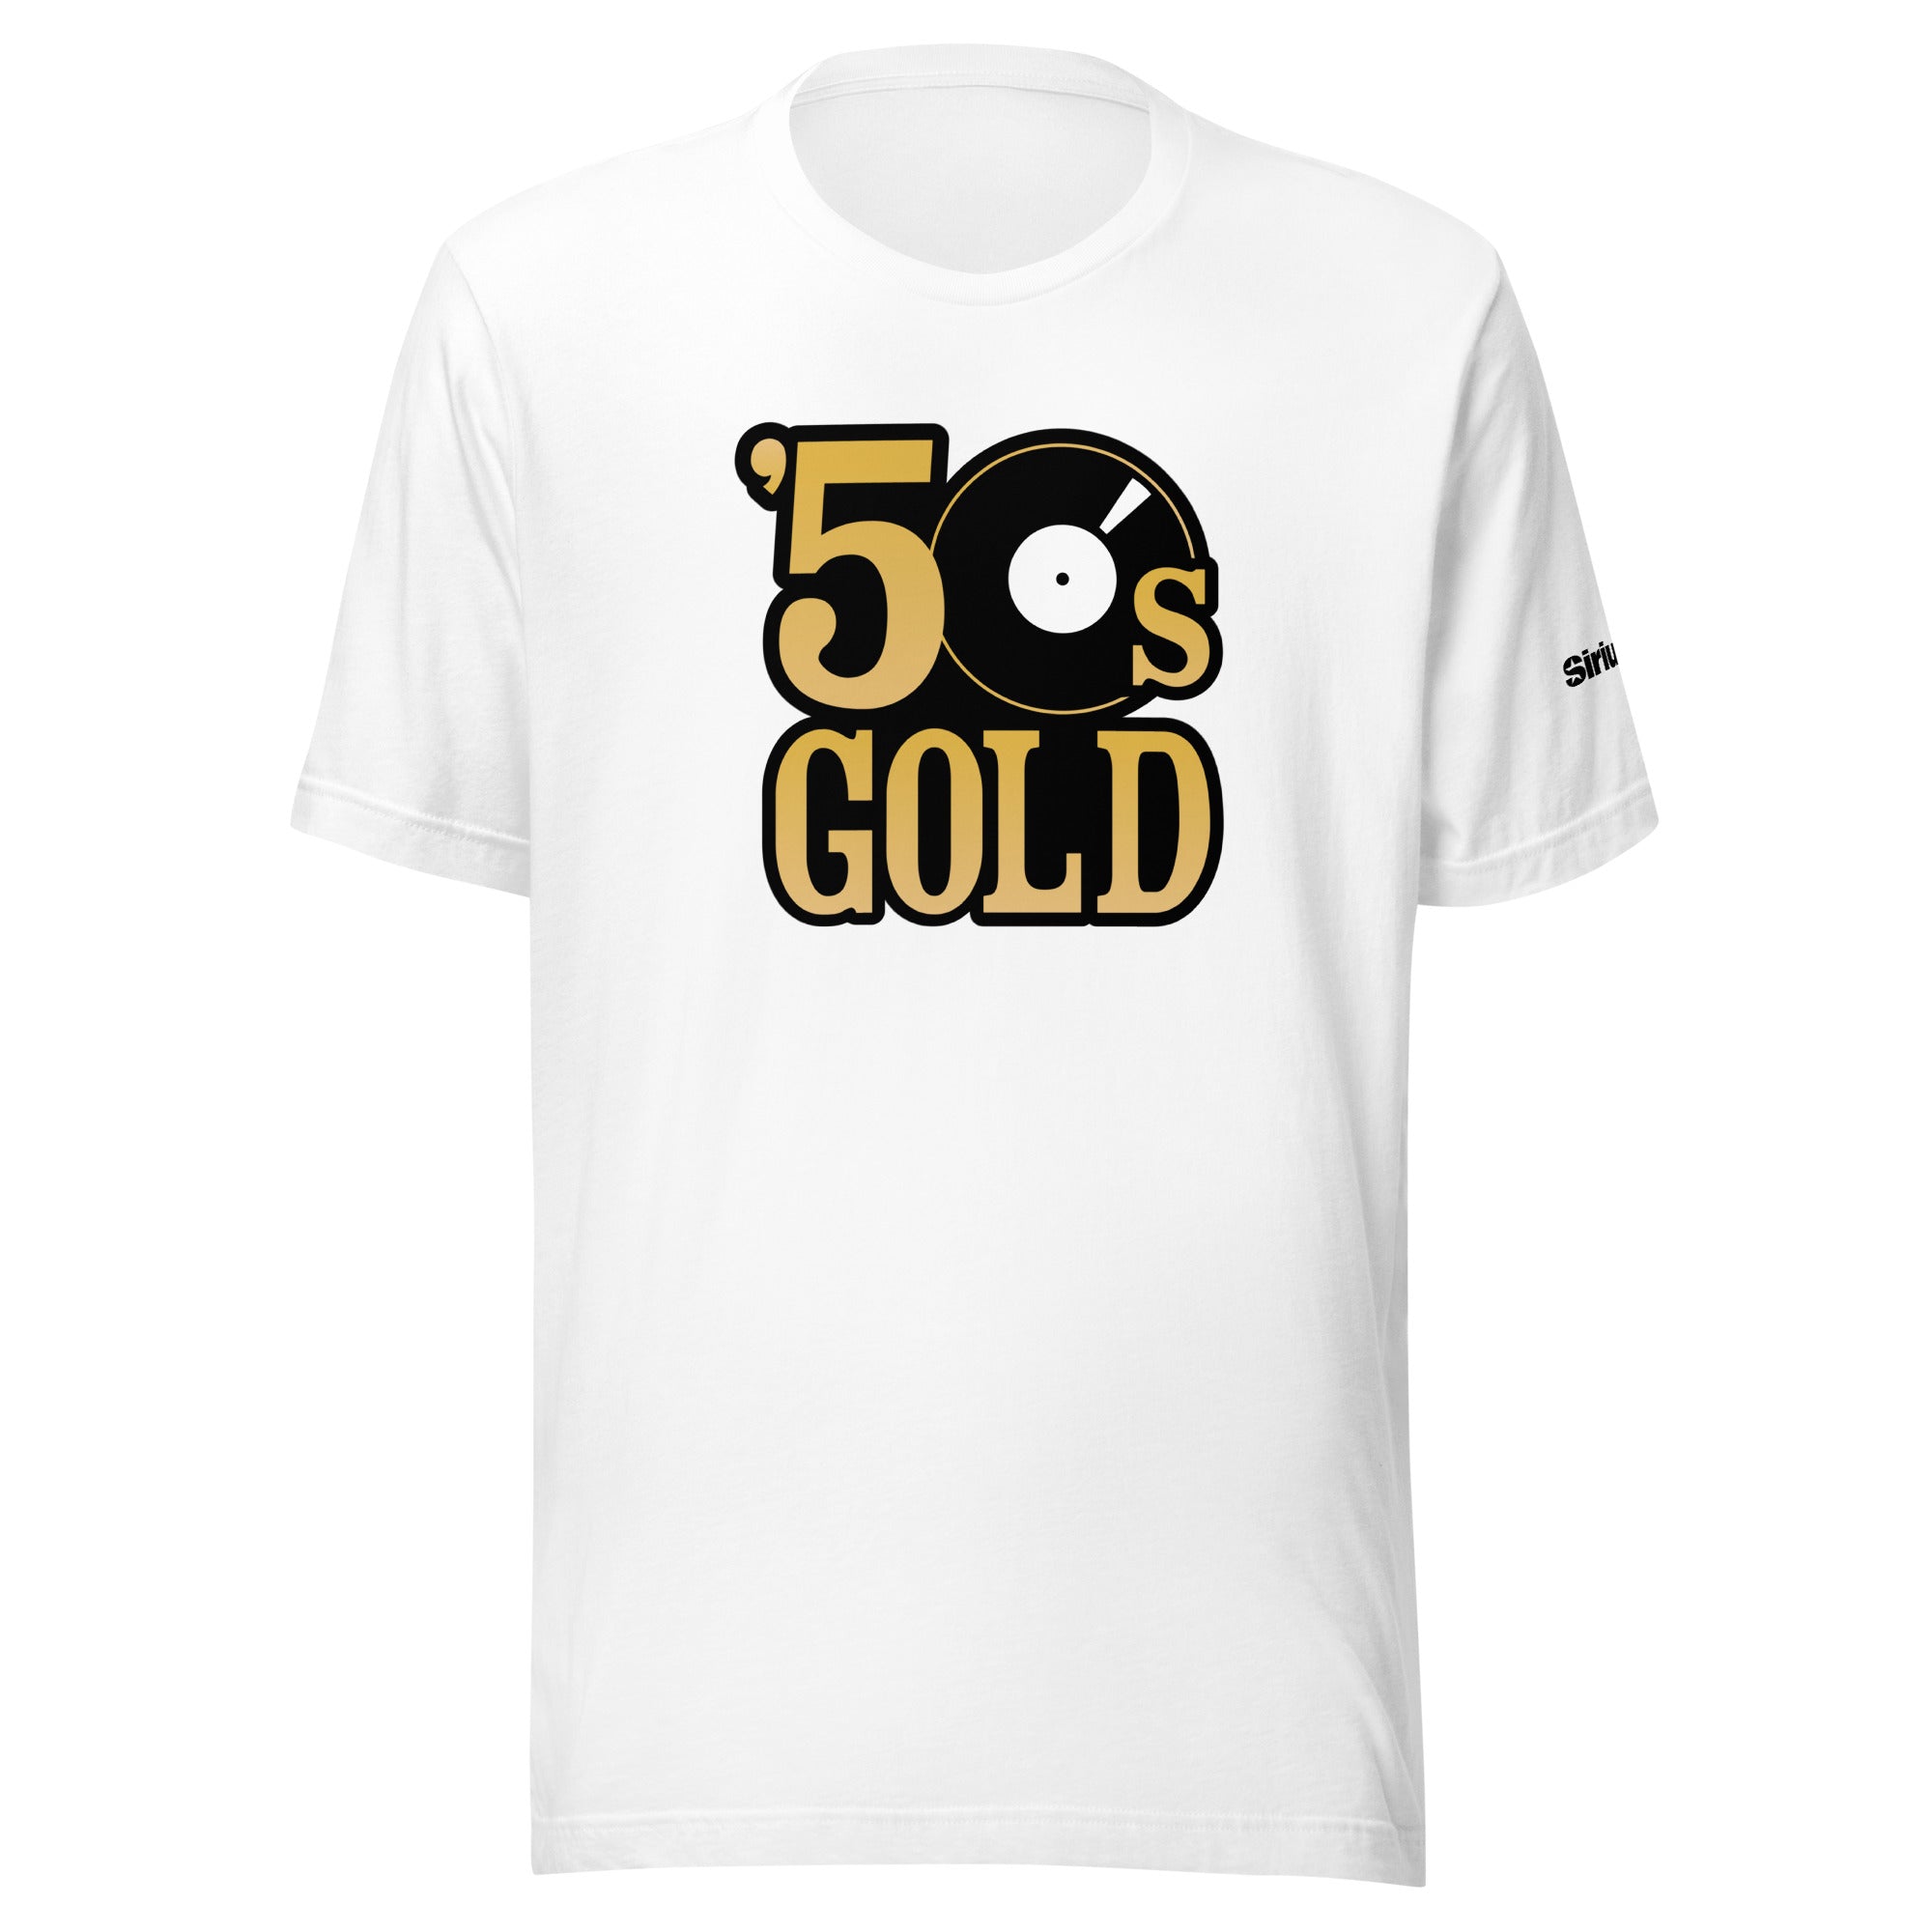 50s Gold: T-shirt (White)